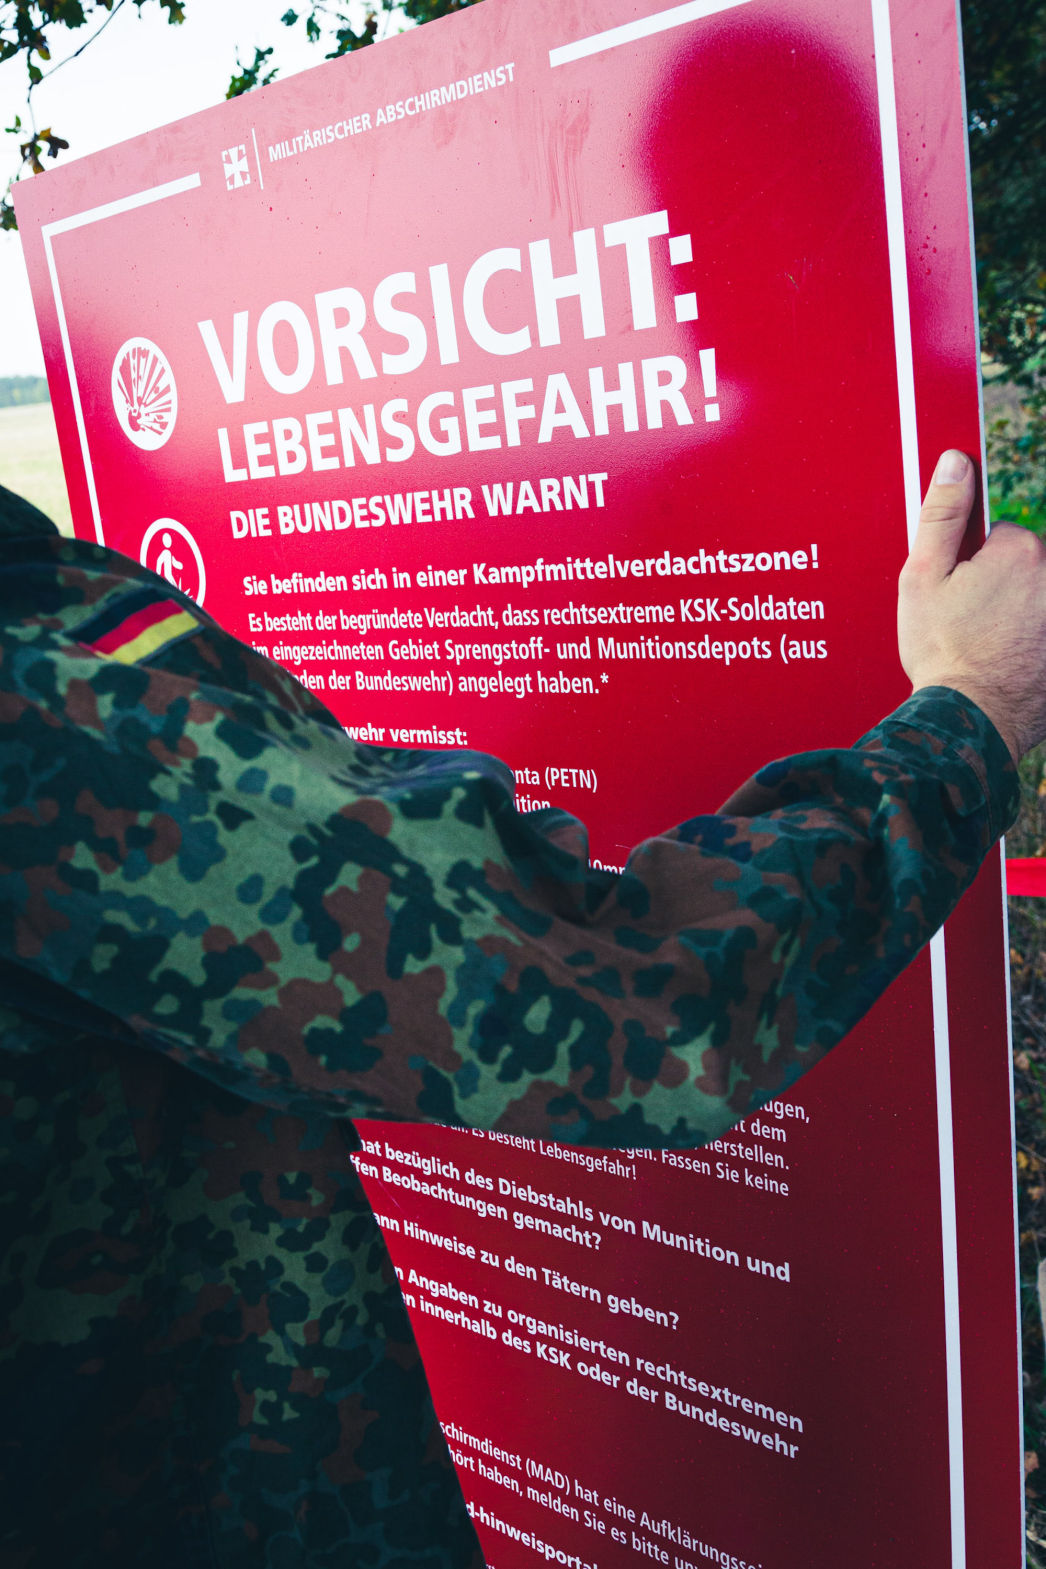 Die Bundeswehr warnt: Vorsicht Lebensgefahr! Wo sind unsere Waffen? Verschwundene Waffen.